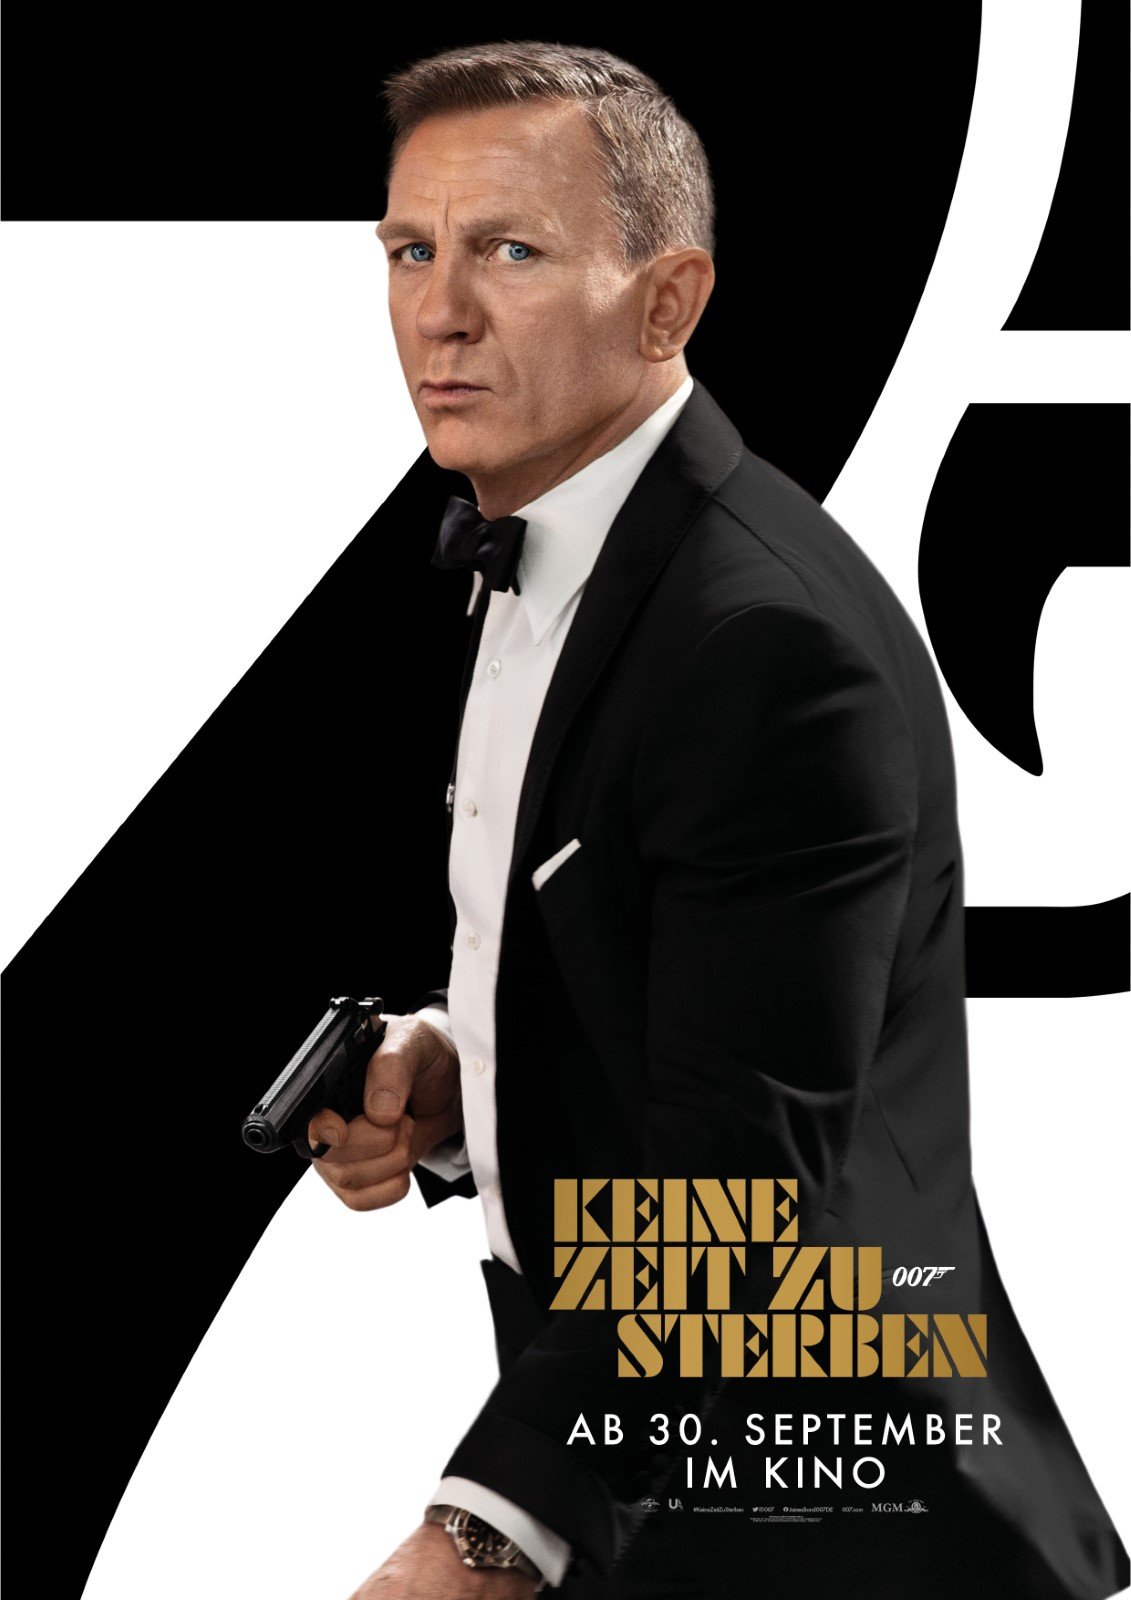 James Bond: Alle Missionen von 007 in unter 5 Minuten erklärt